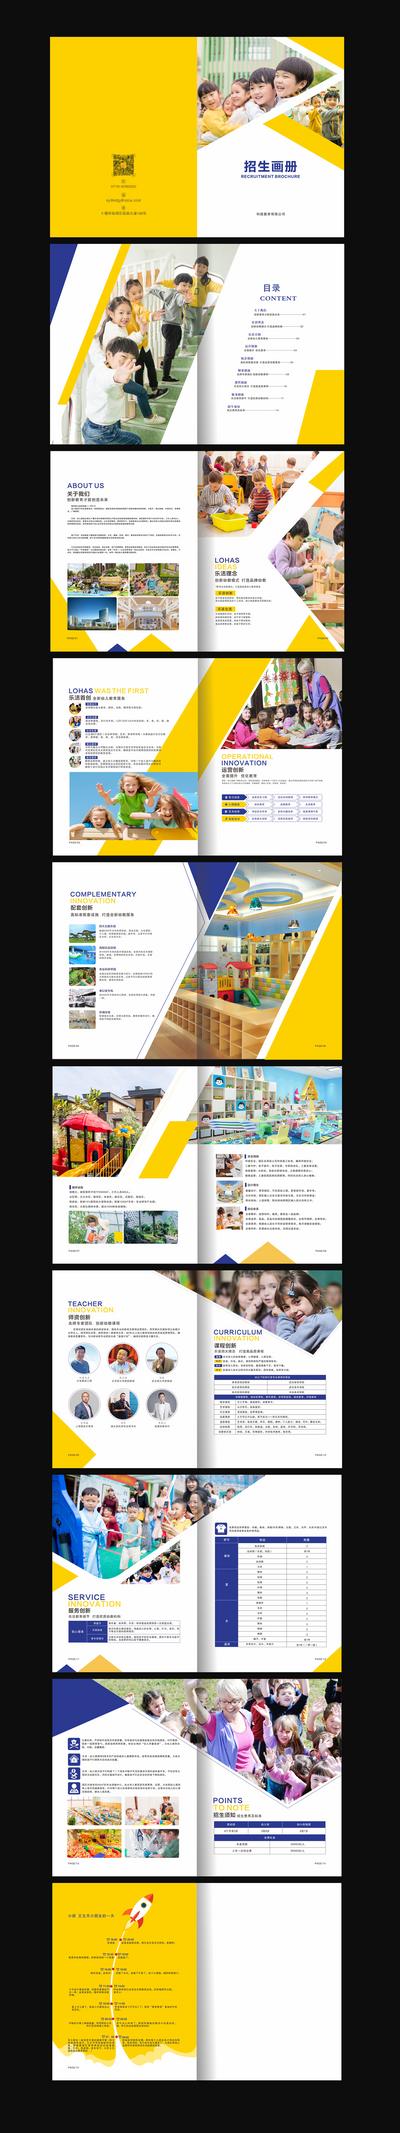 南门网 画册 宣传画册 价值点 幼儿园 教育